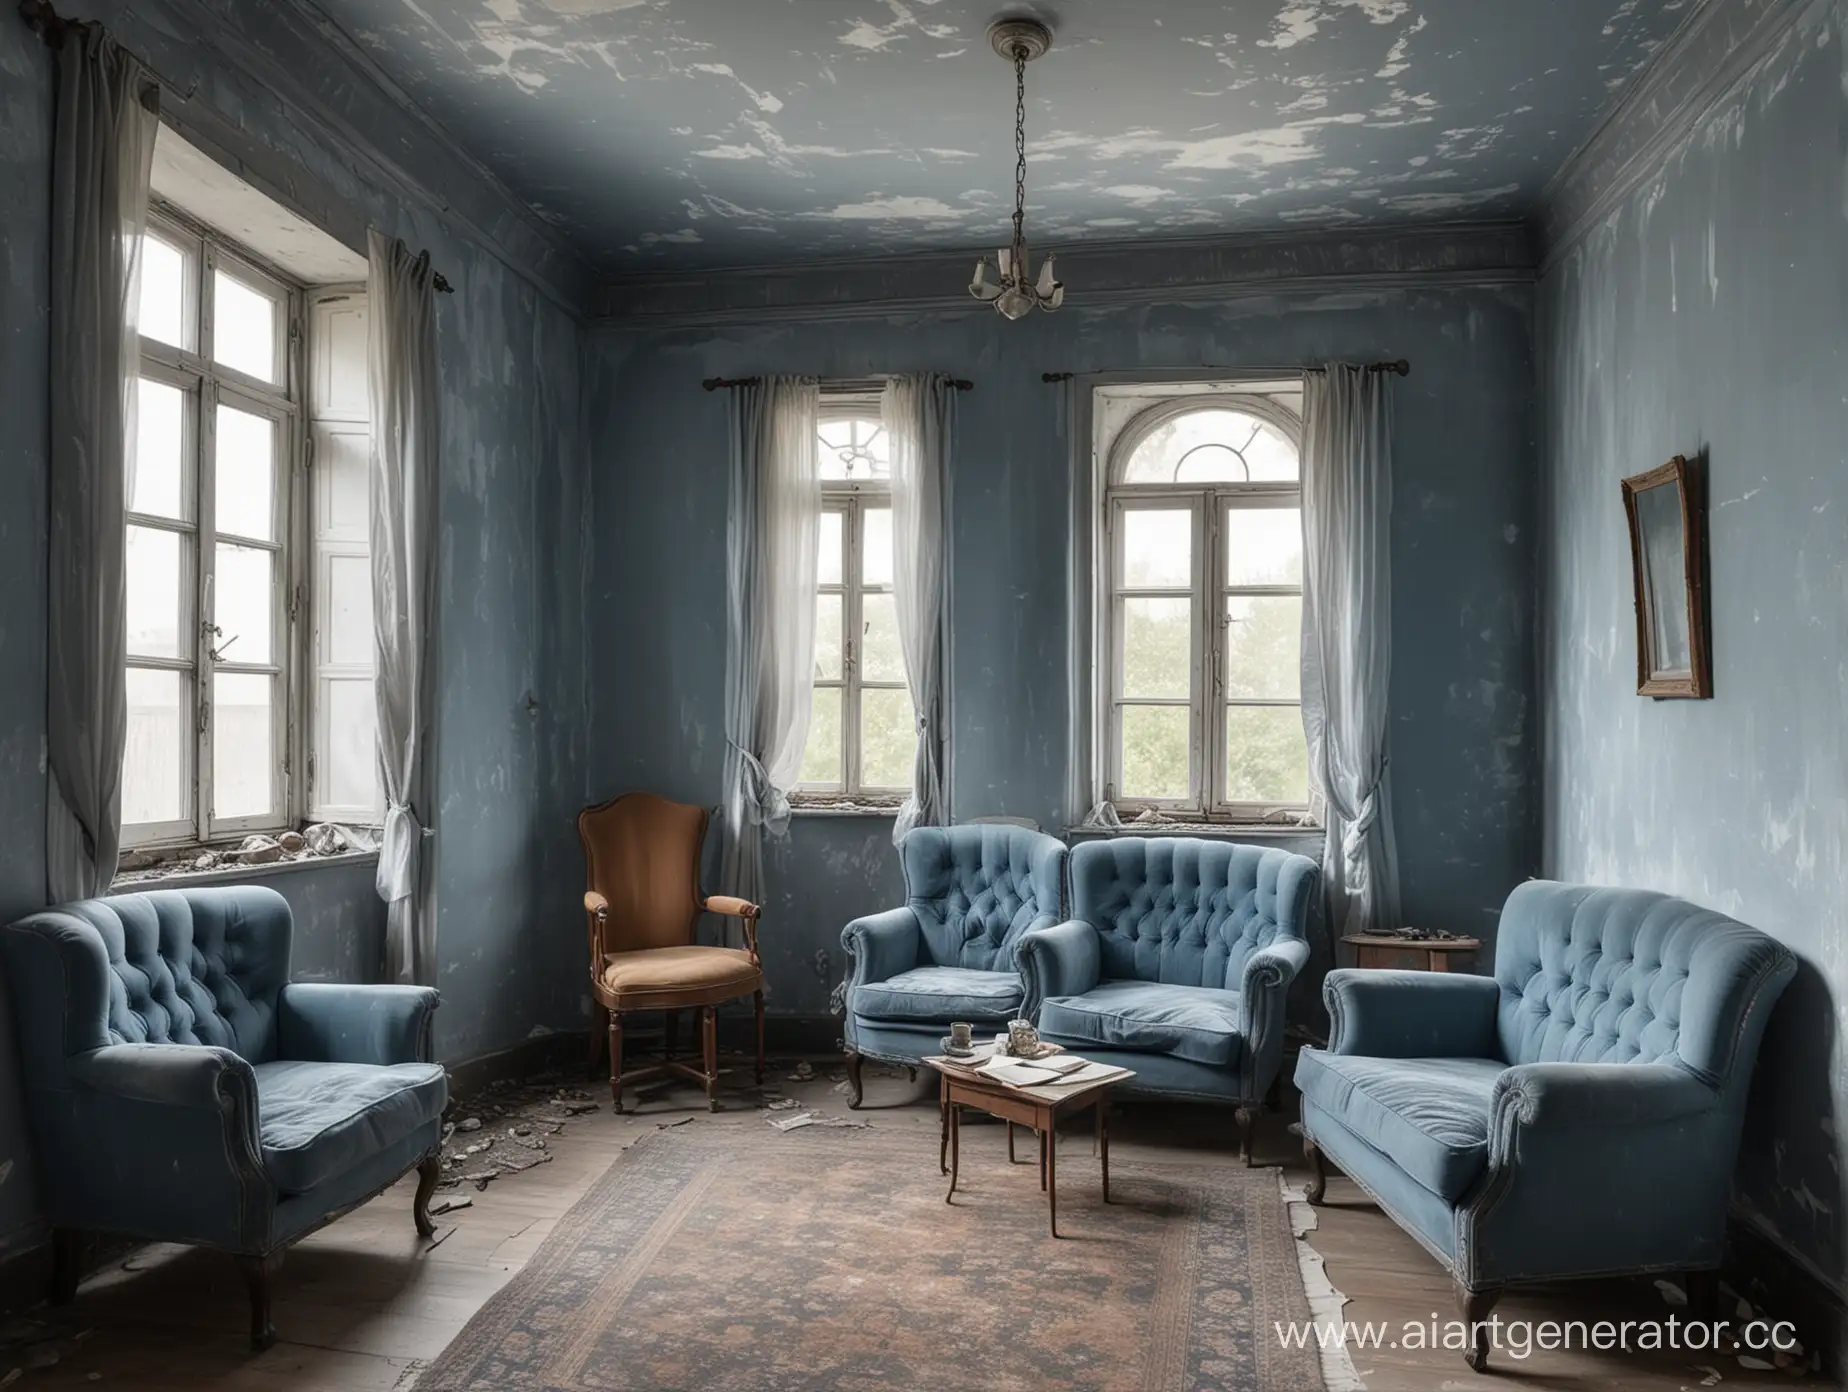 Старая и дряхлая Комната со стенами, окрашенными в серо-голубой цвет, в ней четыре стула, одно кресло, стол, на котором лежит книга, в комнате есть окна, на подоконнике трубка для курения, есть диван,